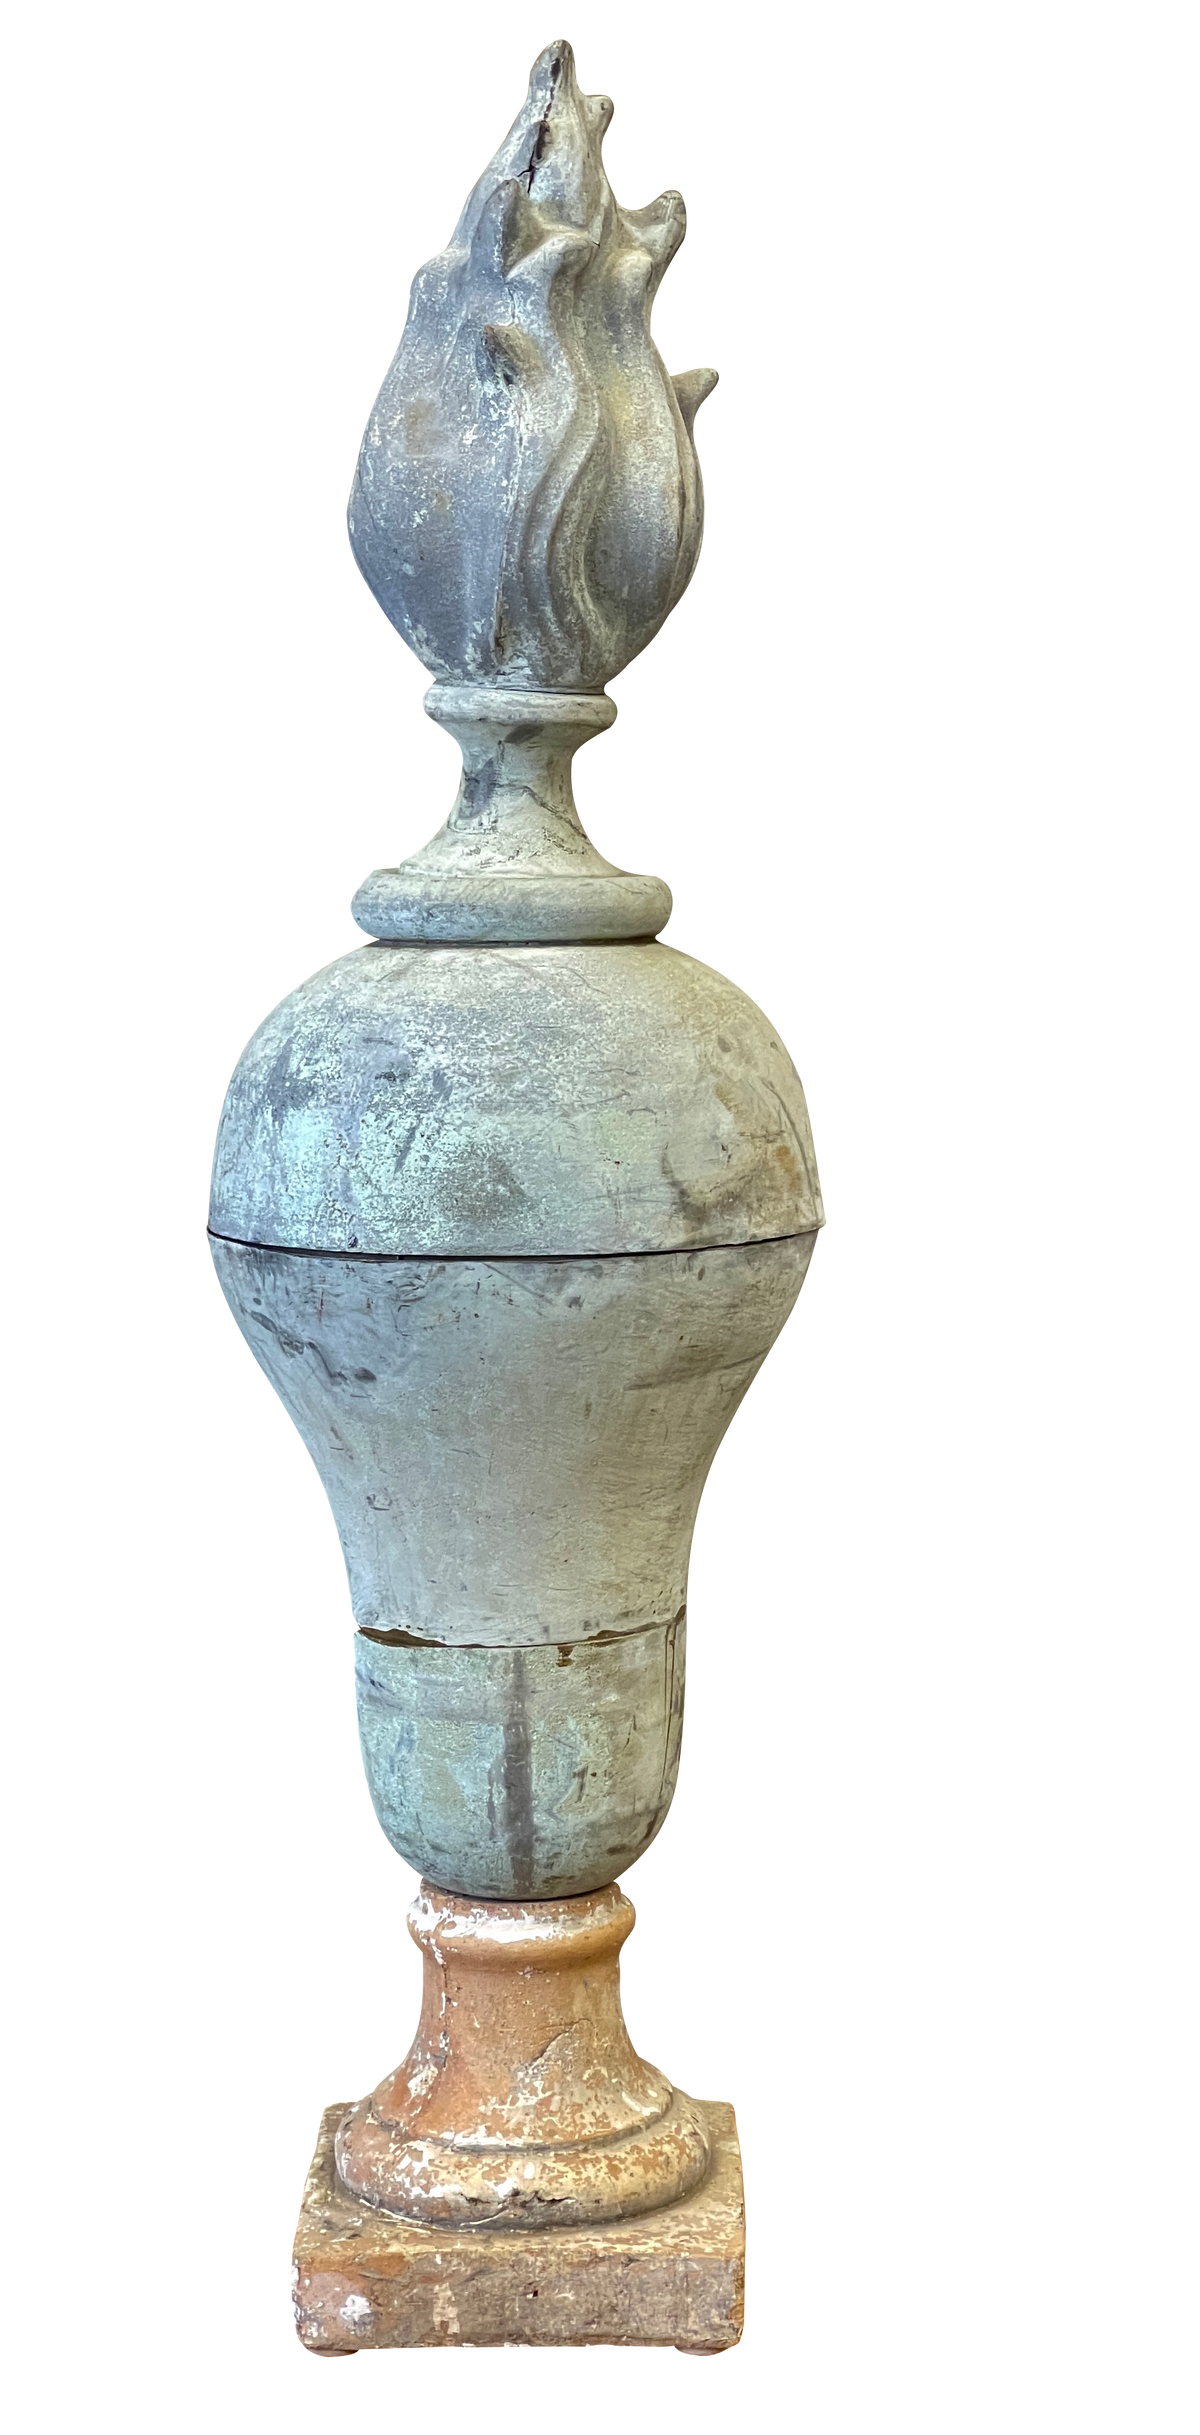 Antique Zinc Urn on Stone base